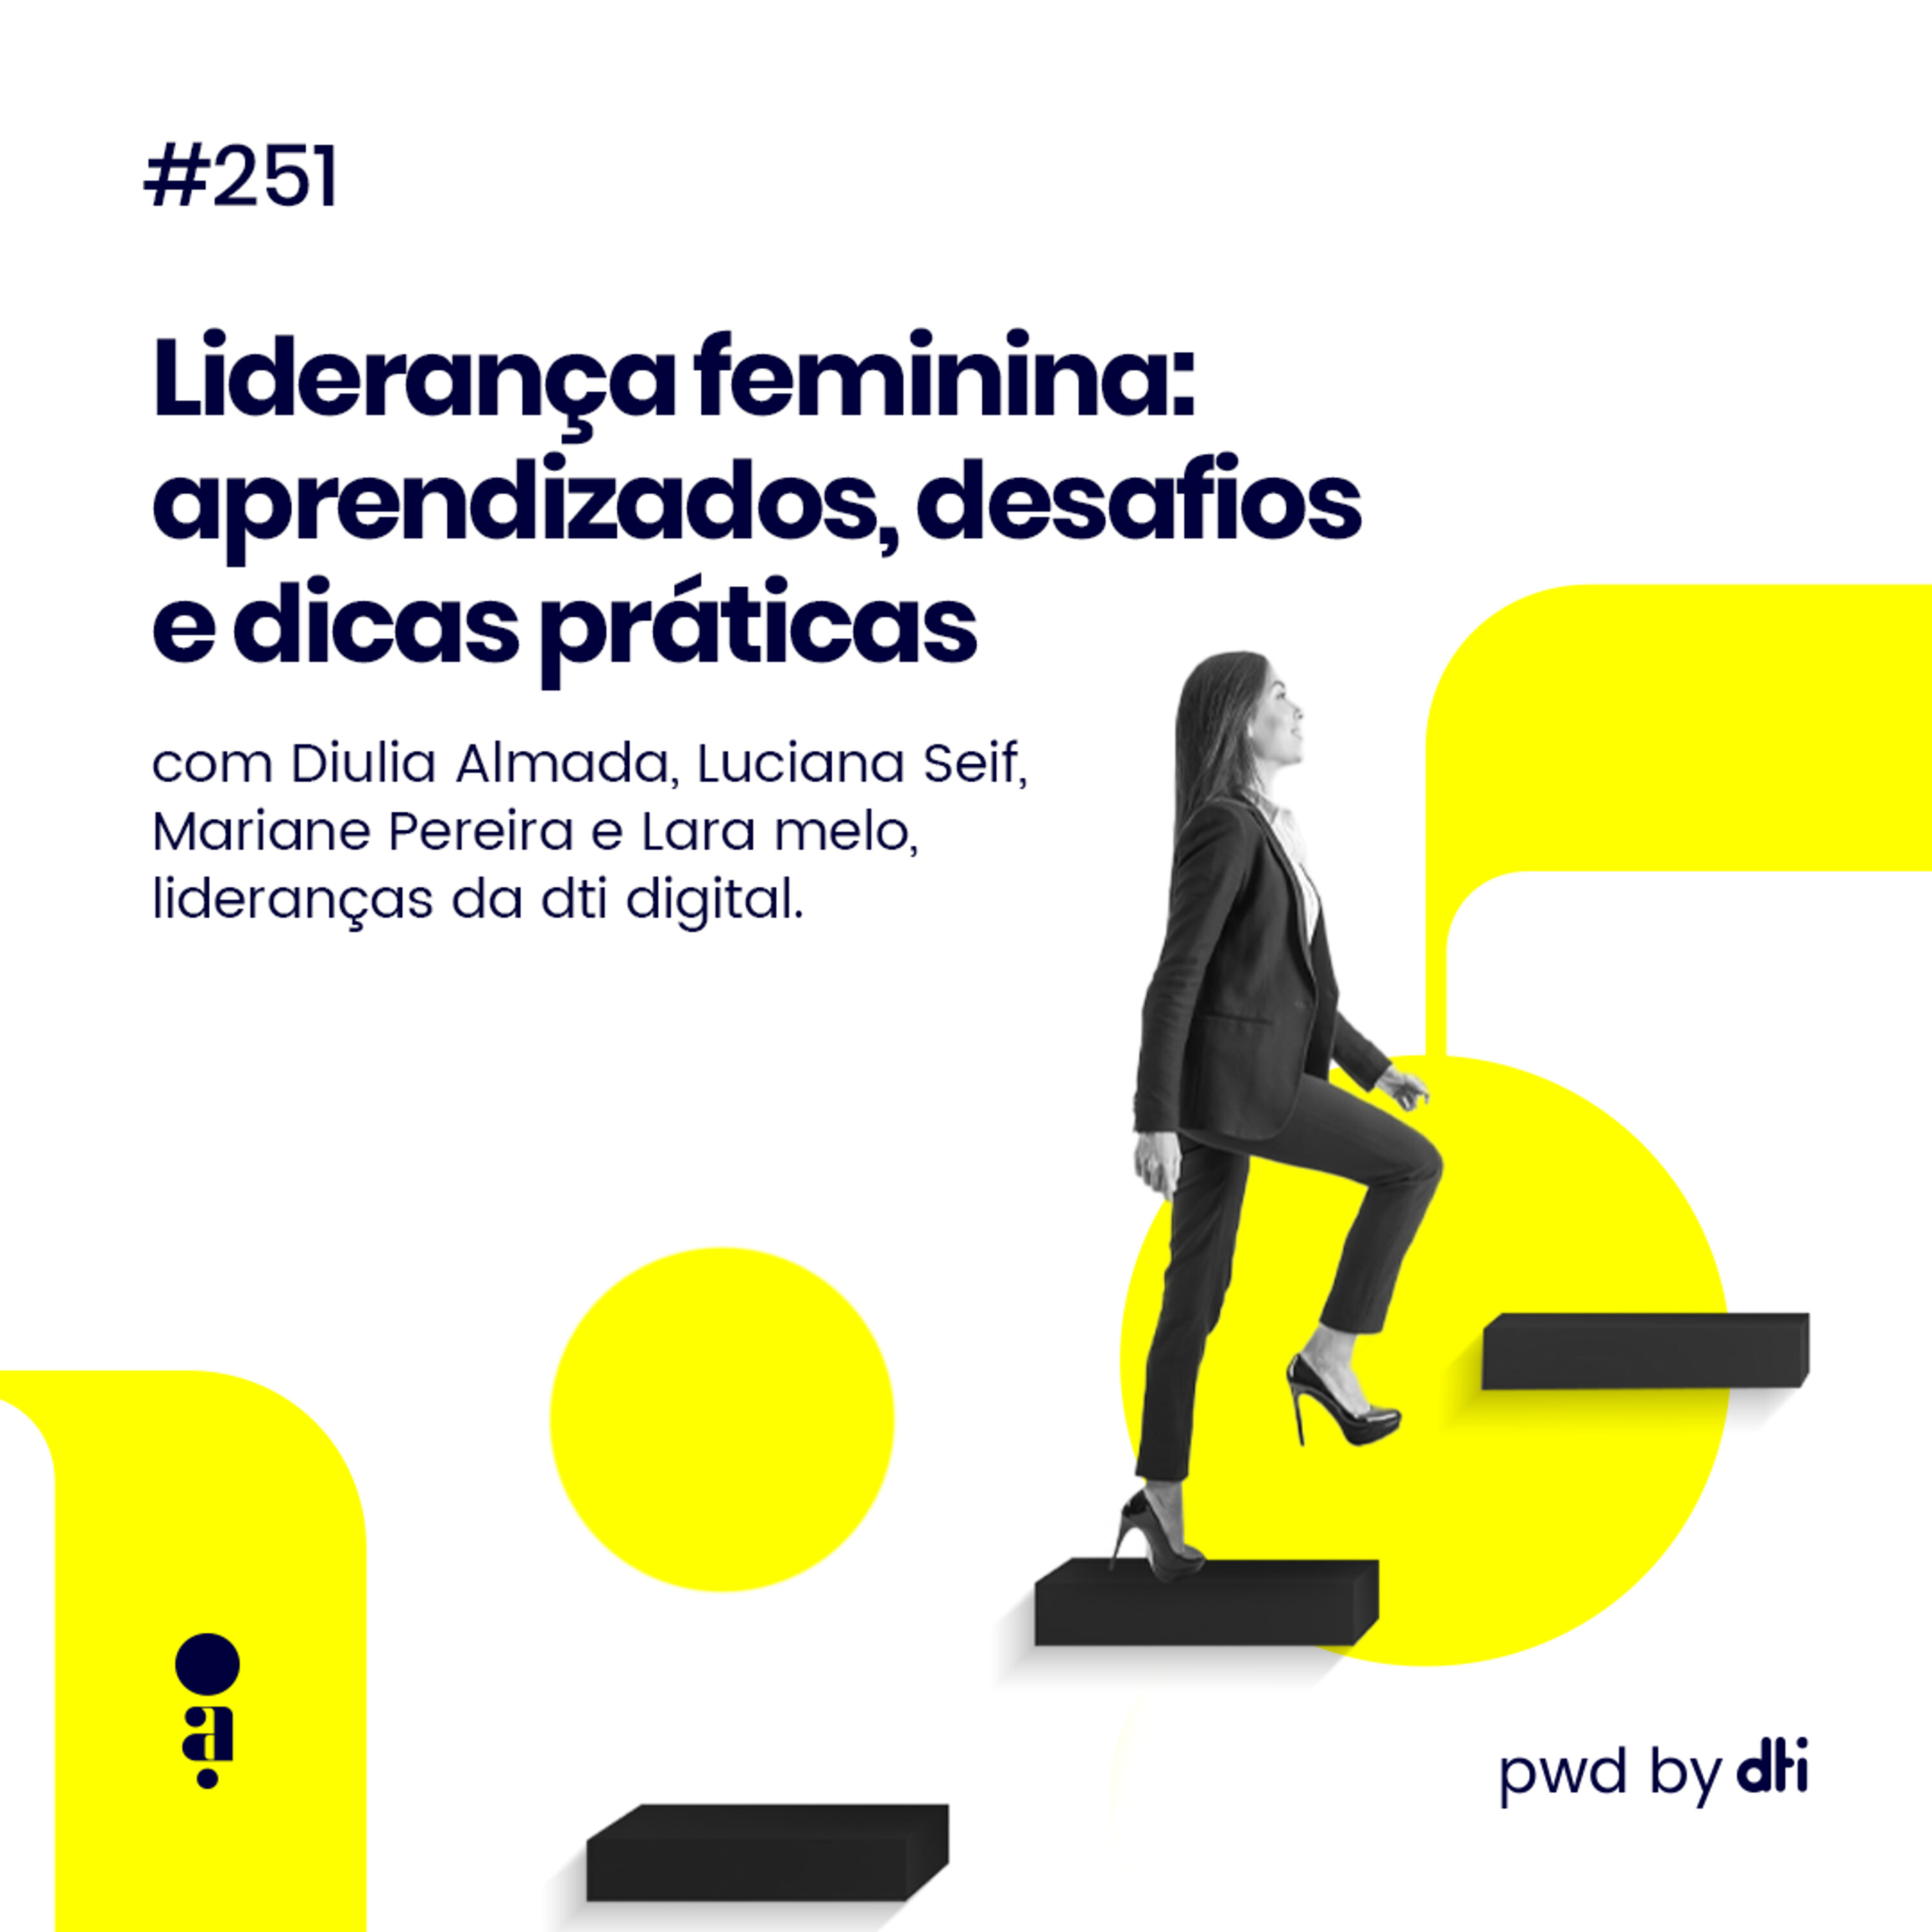 #251 - Liderança feminina: aprendizados, desafios e dicas práticas